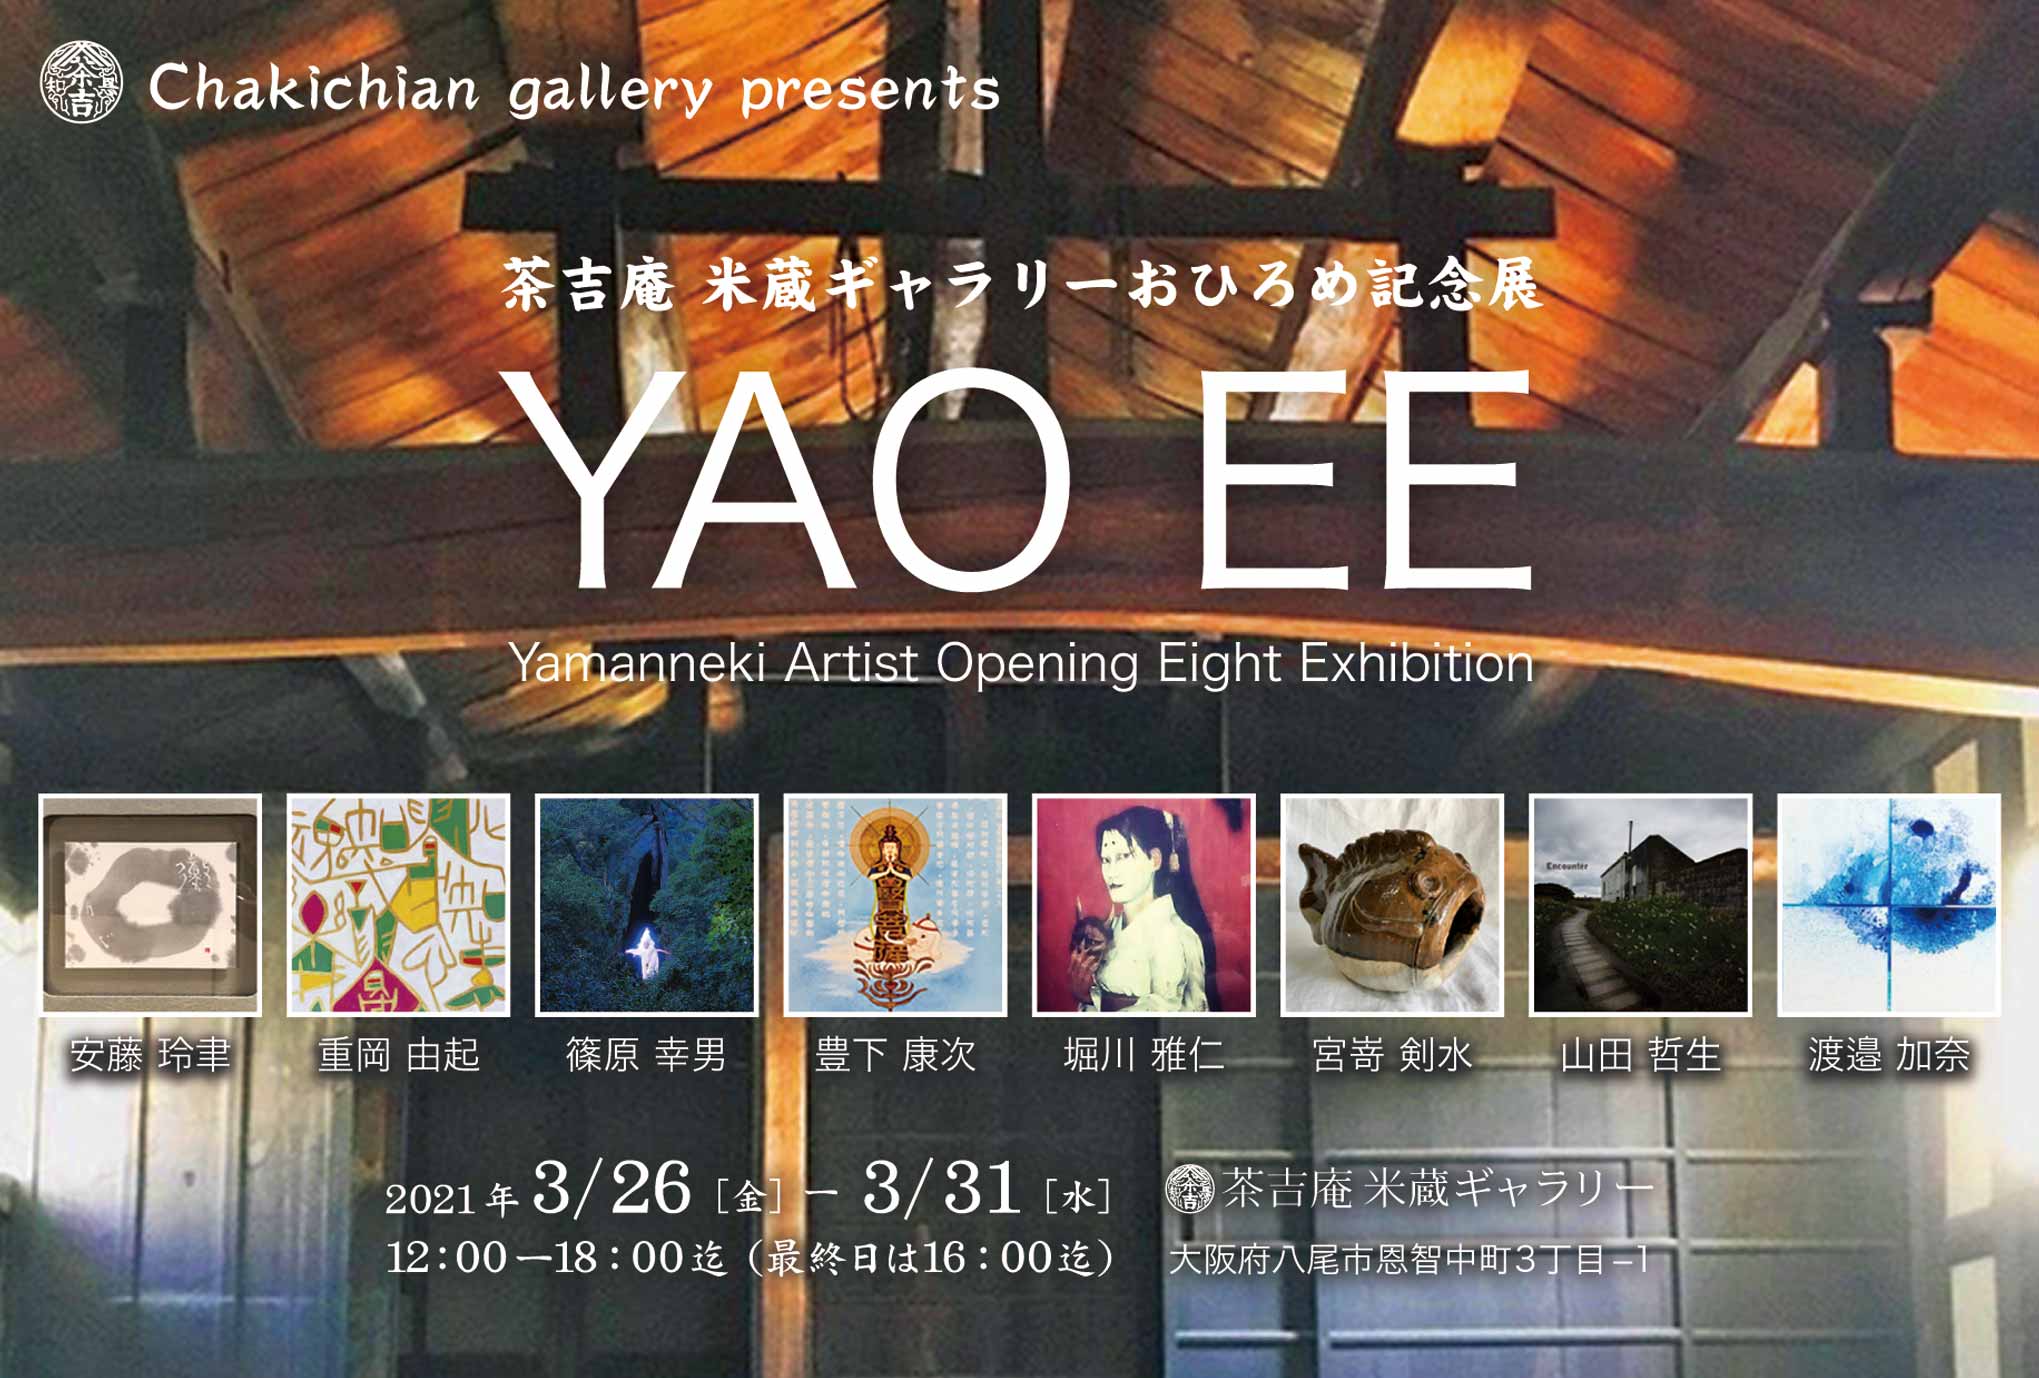 【2021.3.2-3.31】茶吉庵 米蔵ギャラリーおひろめ記念展 『YAO EE』